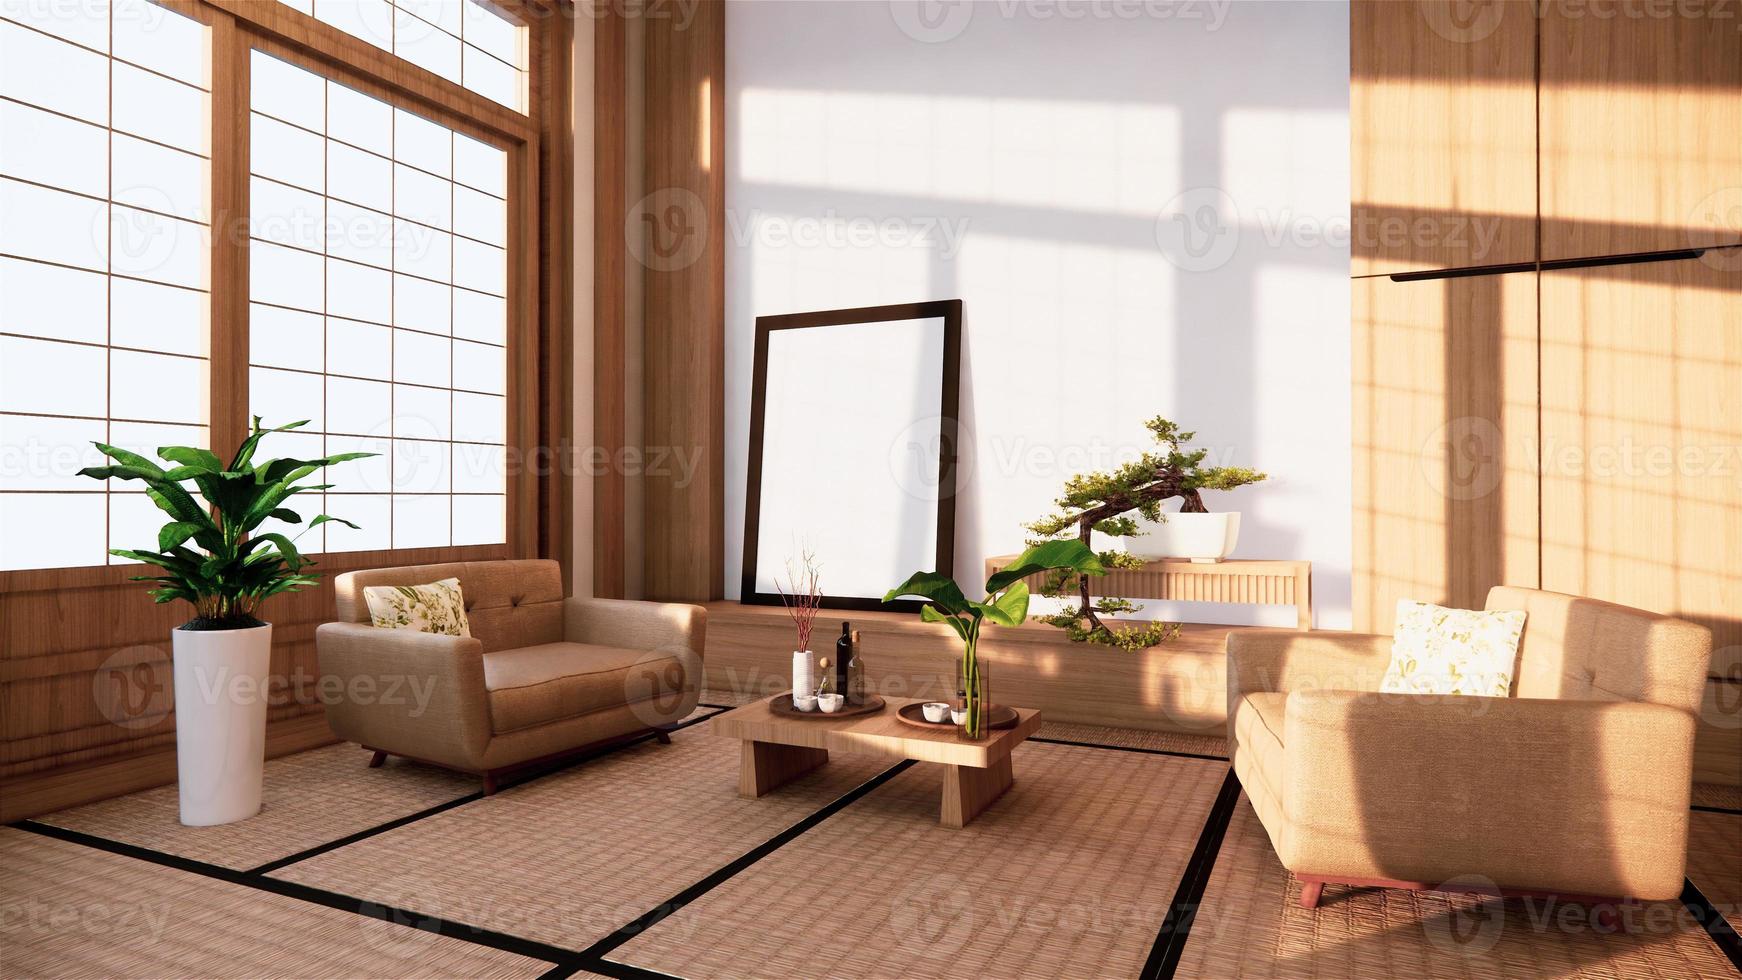 sofá de estilo japonés en la habitación de Japón y el fondo blanco proporciona una ventana para la edición. foto